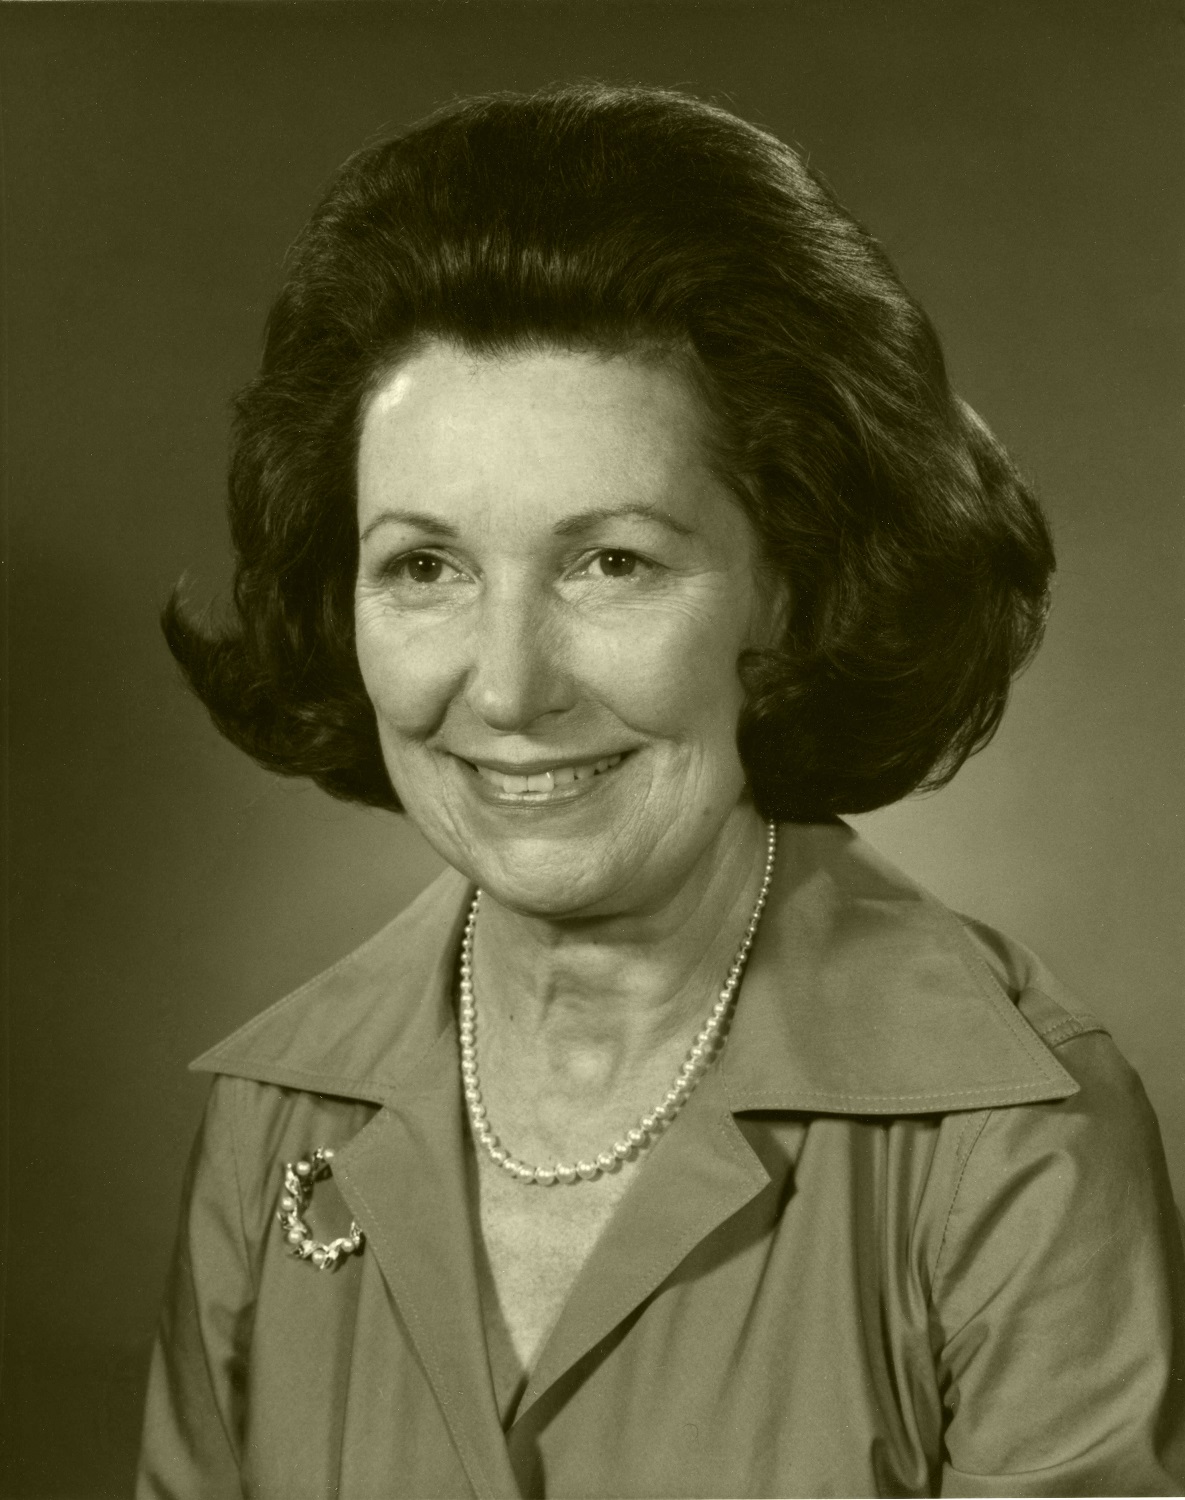 Picture of MPP Margaret Scrivener